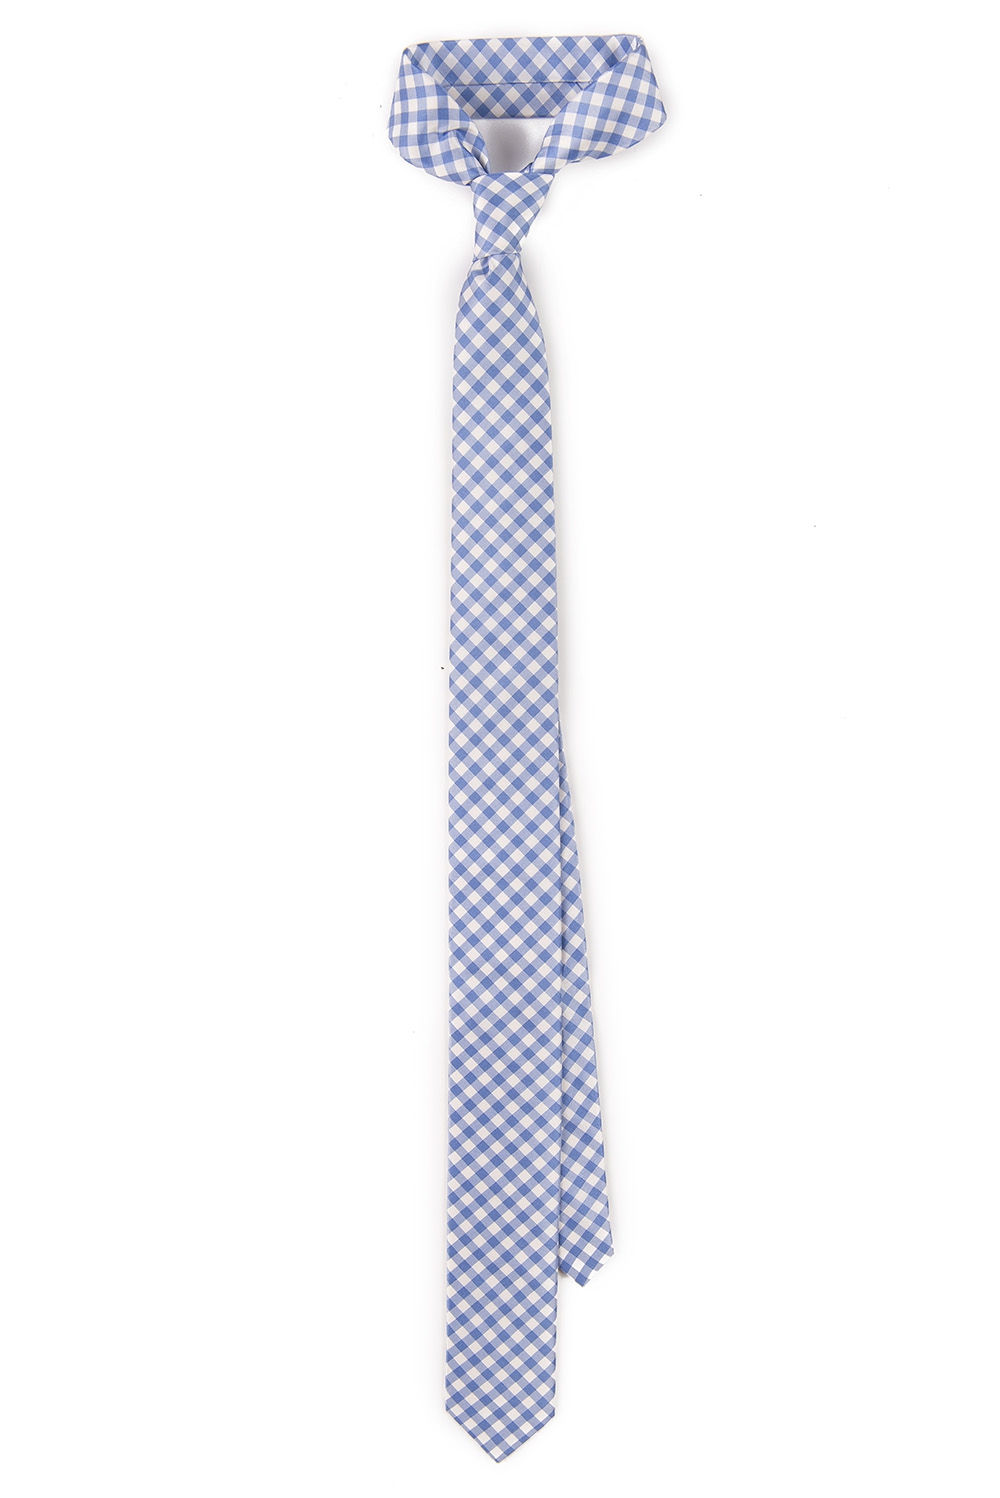 Cravata alba print caro 0